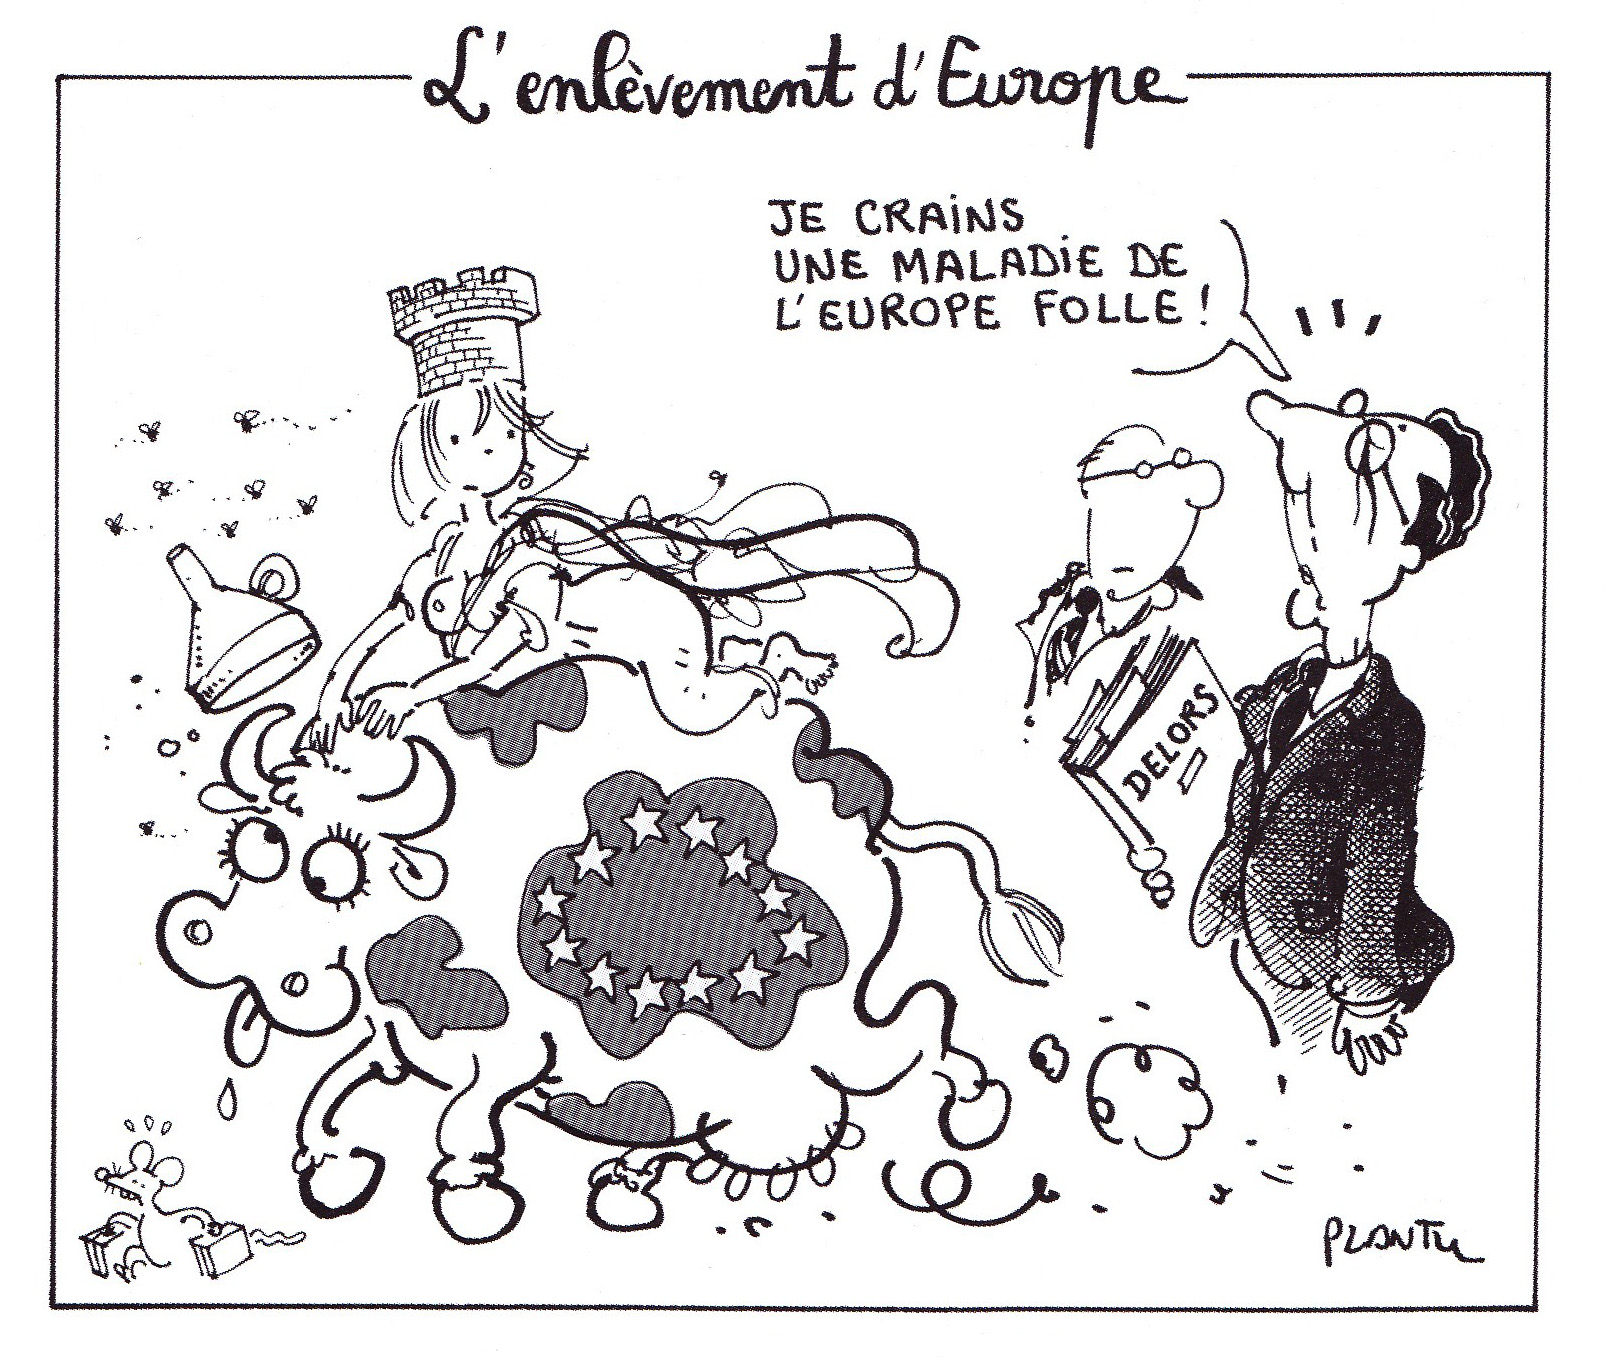 Plantu_L'Enlevement_d'Europe_1996